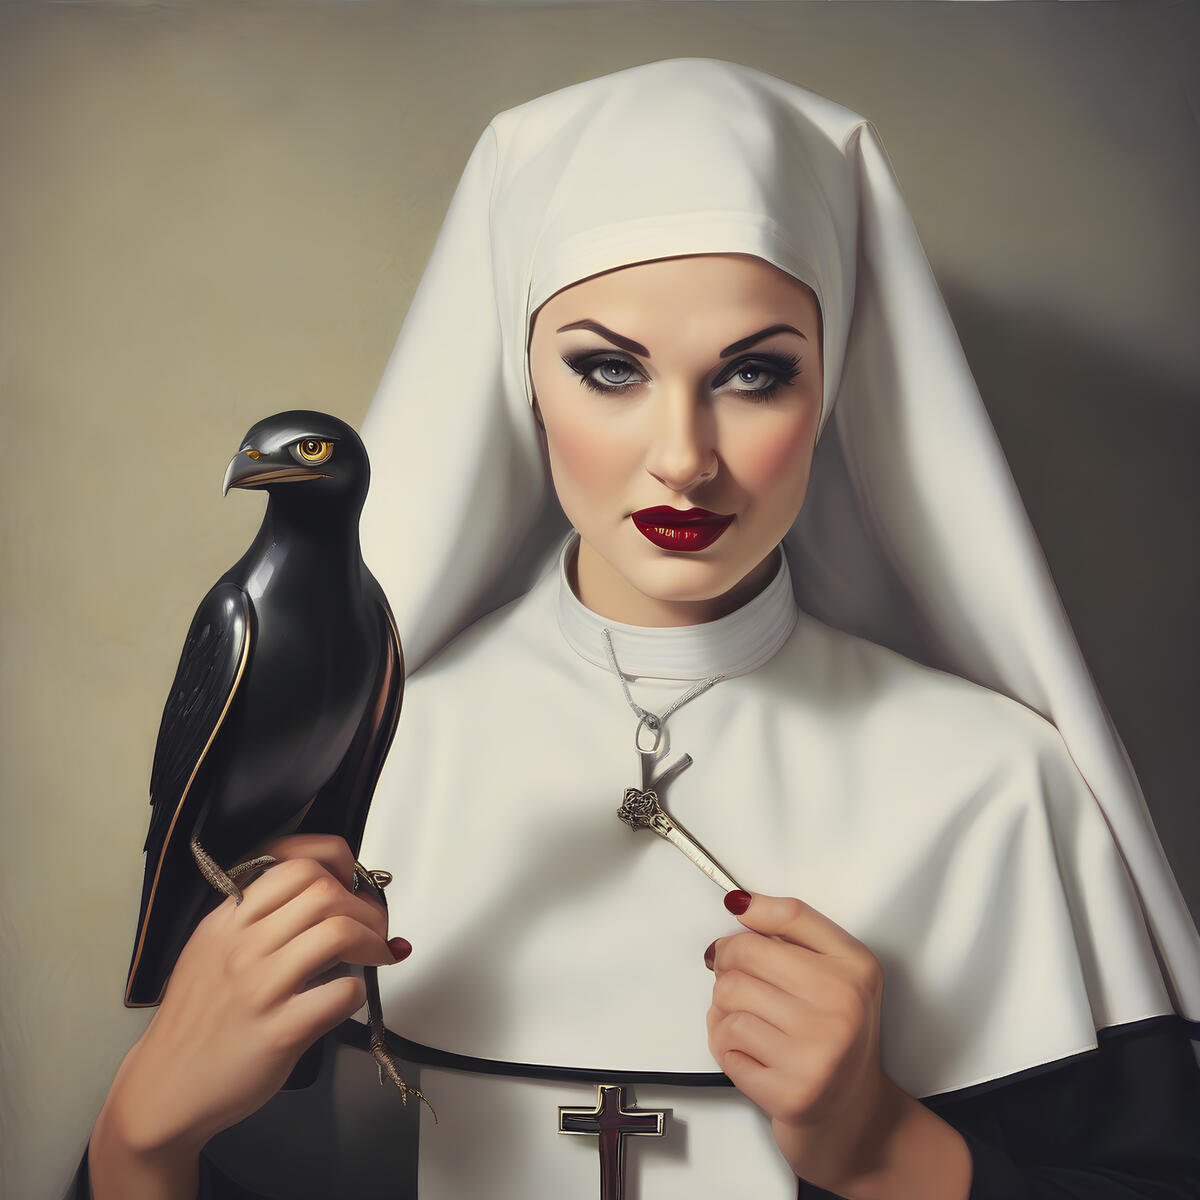 A beautiful nun